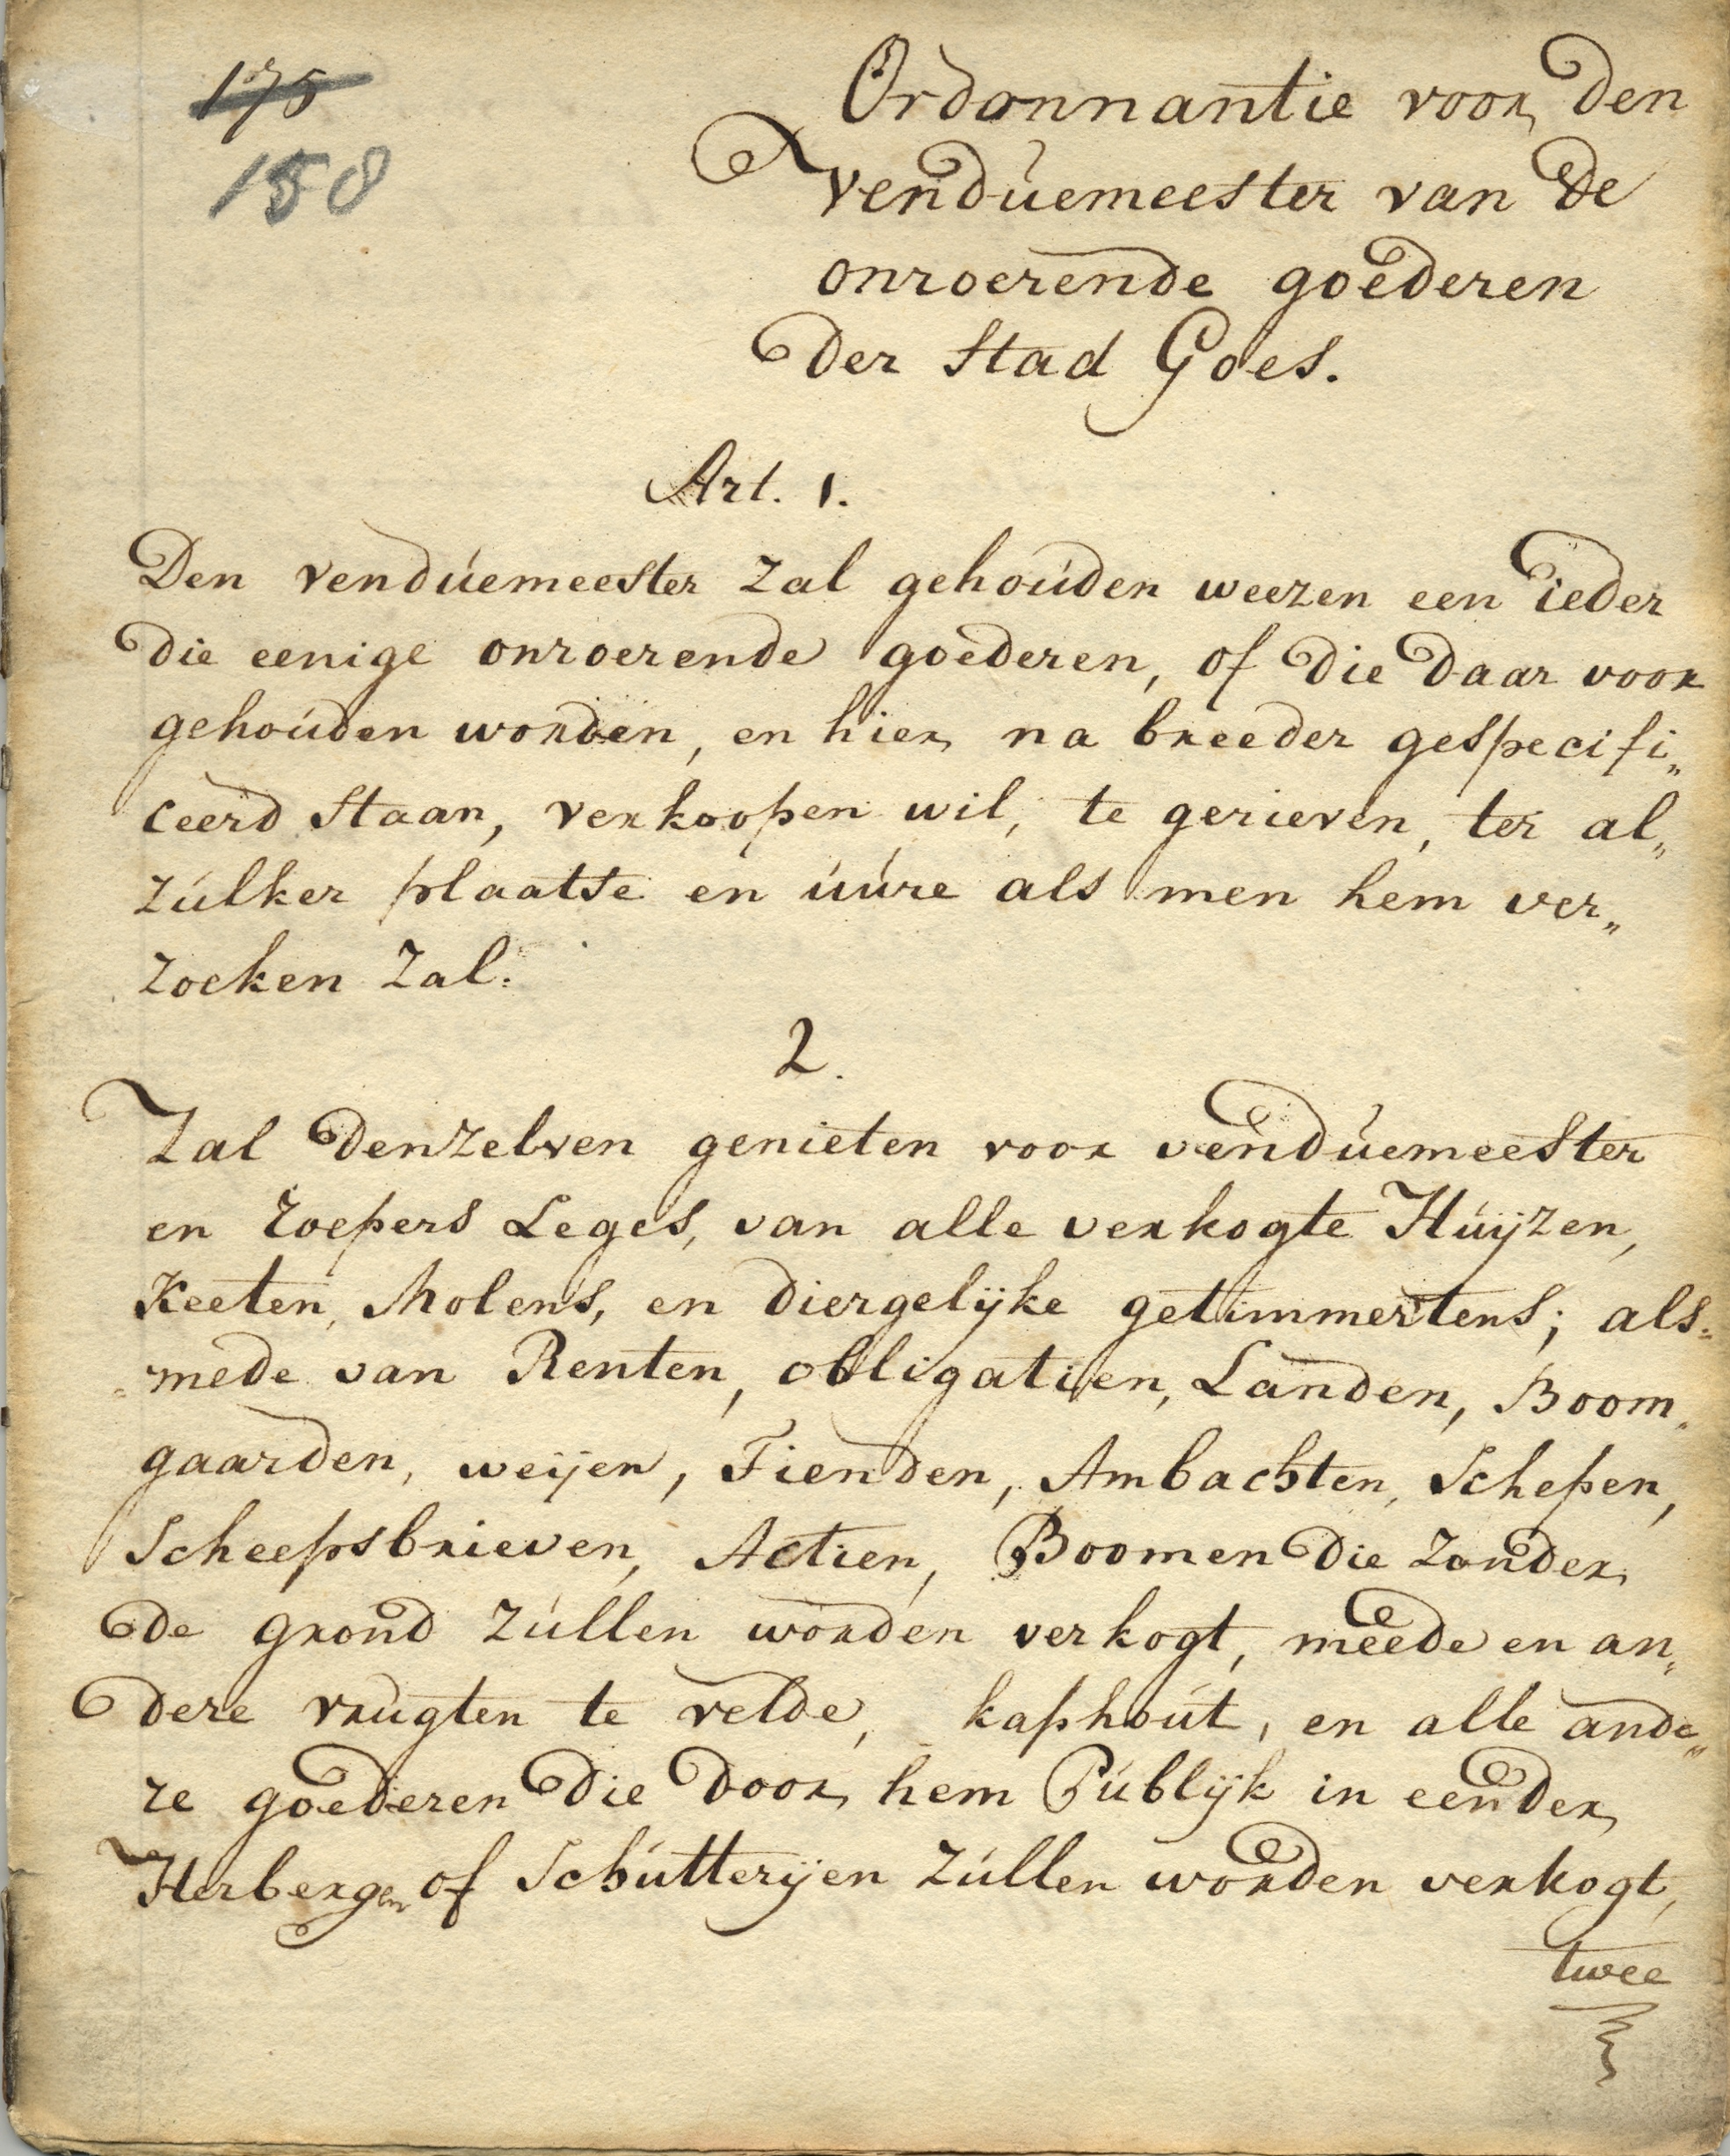 Ordonnantie voor de venduemeester van onroerende goederen, 1781.